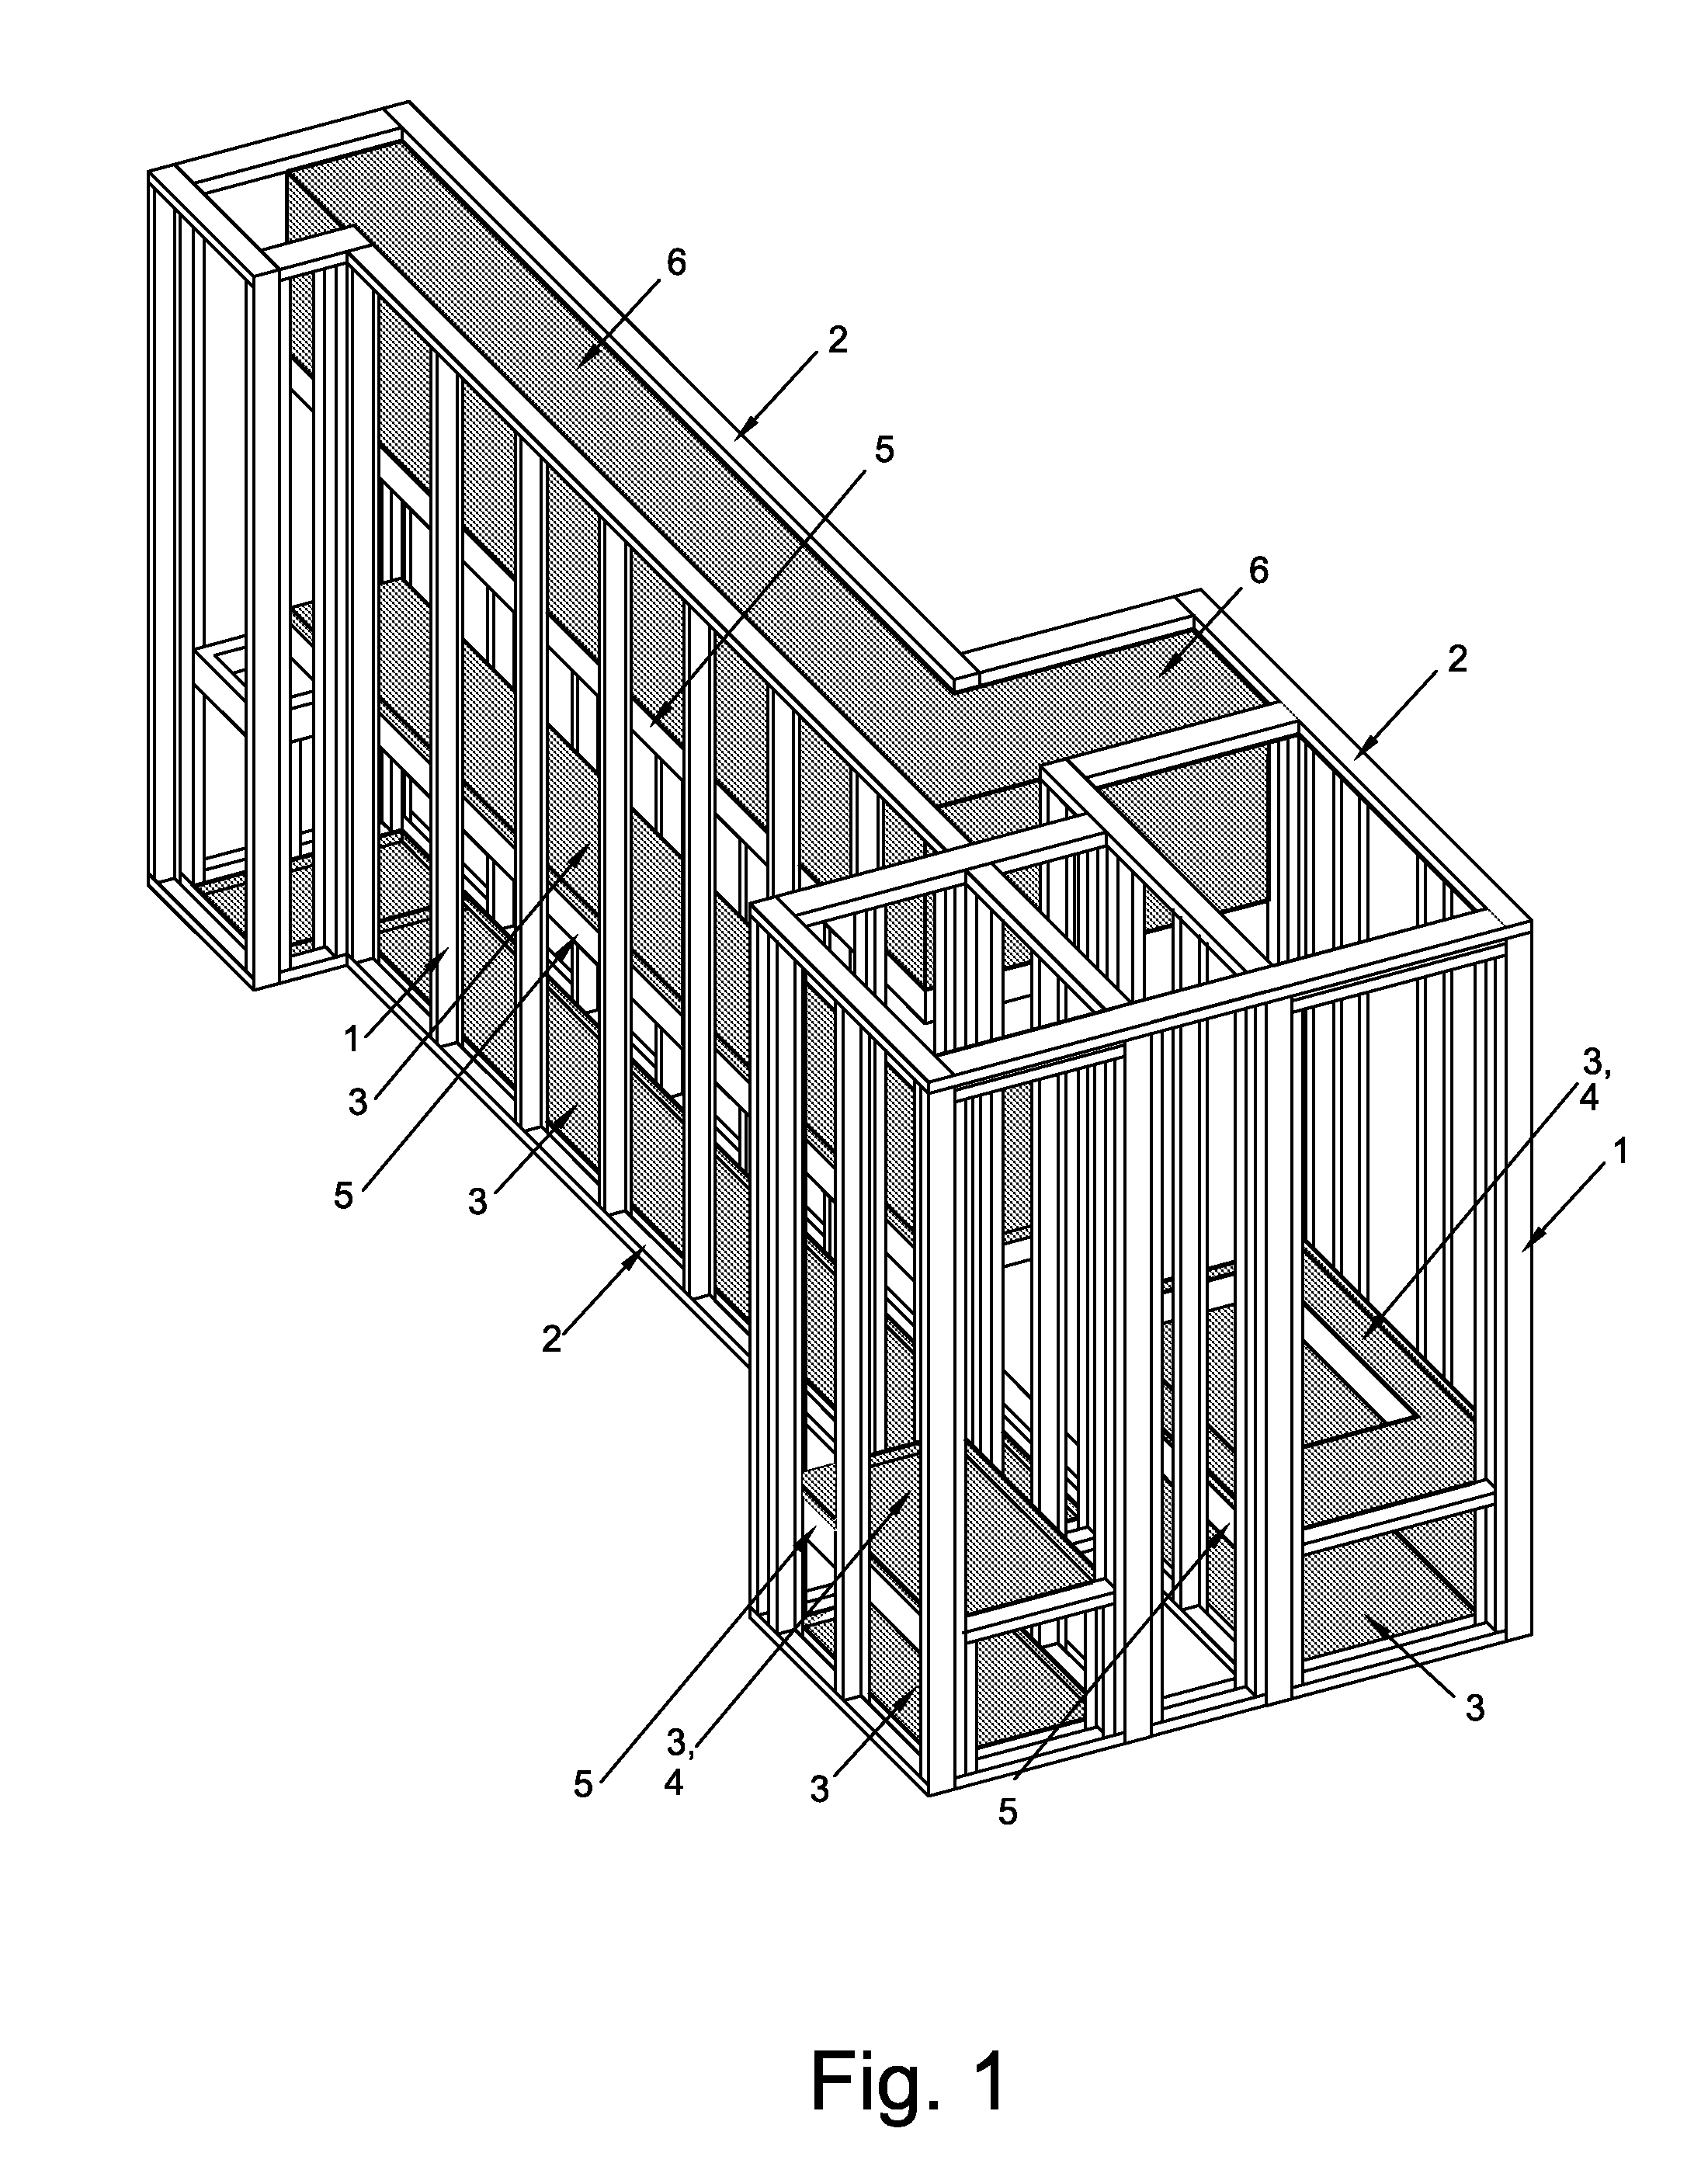 KE architectural element